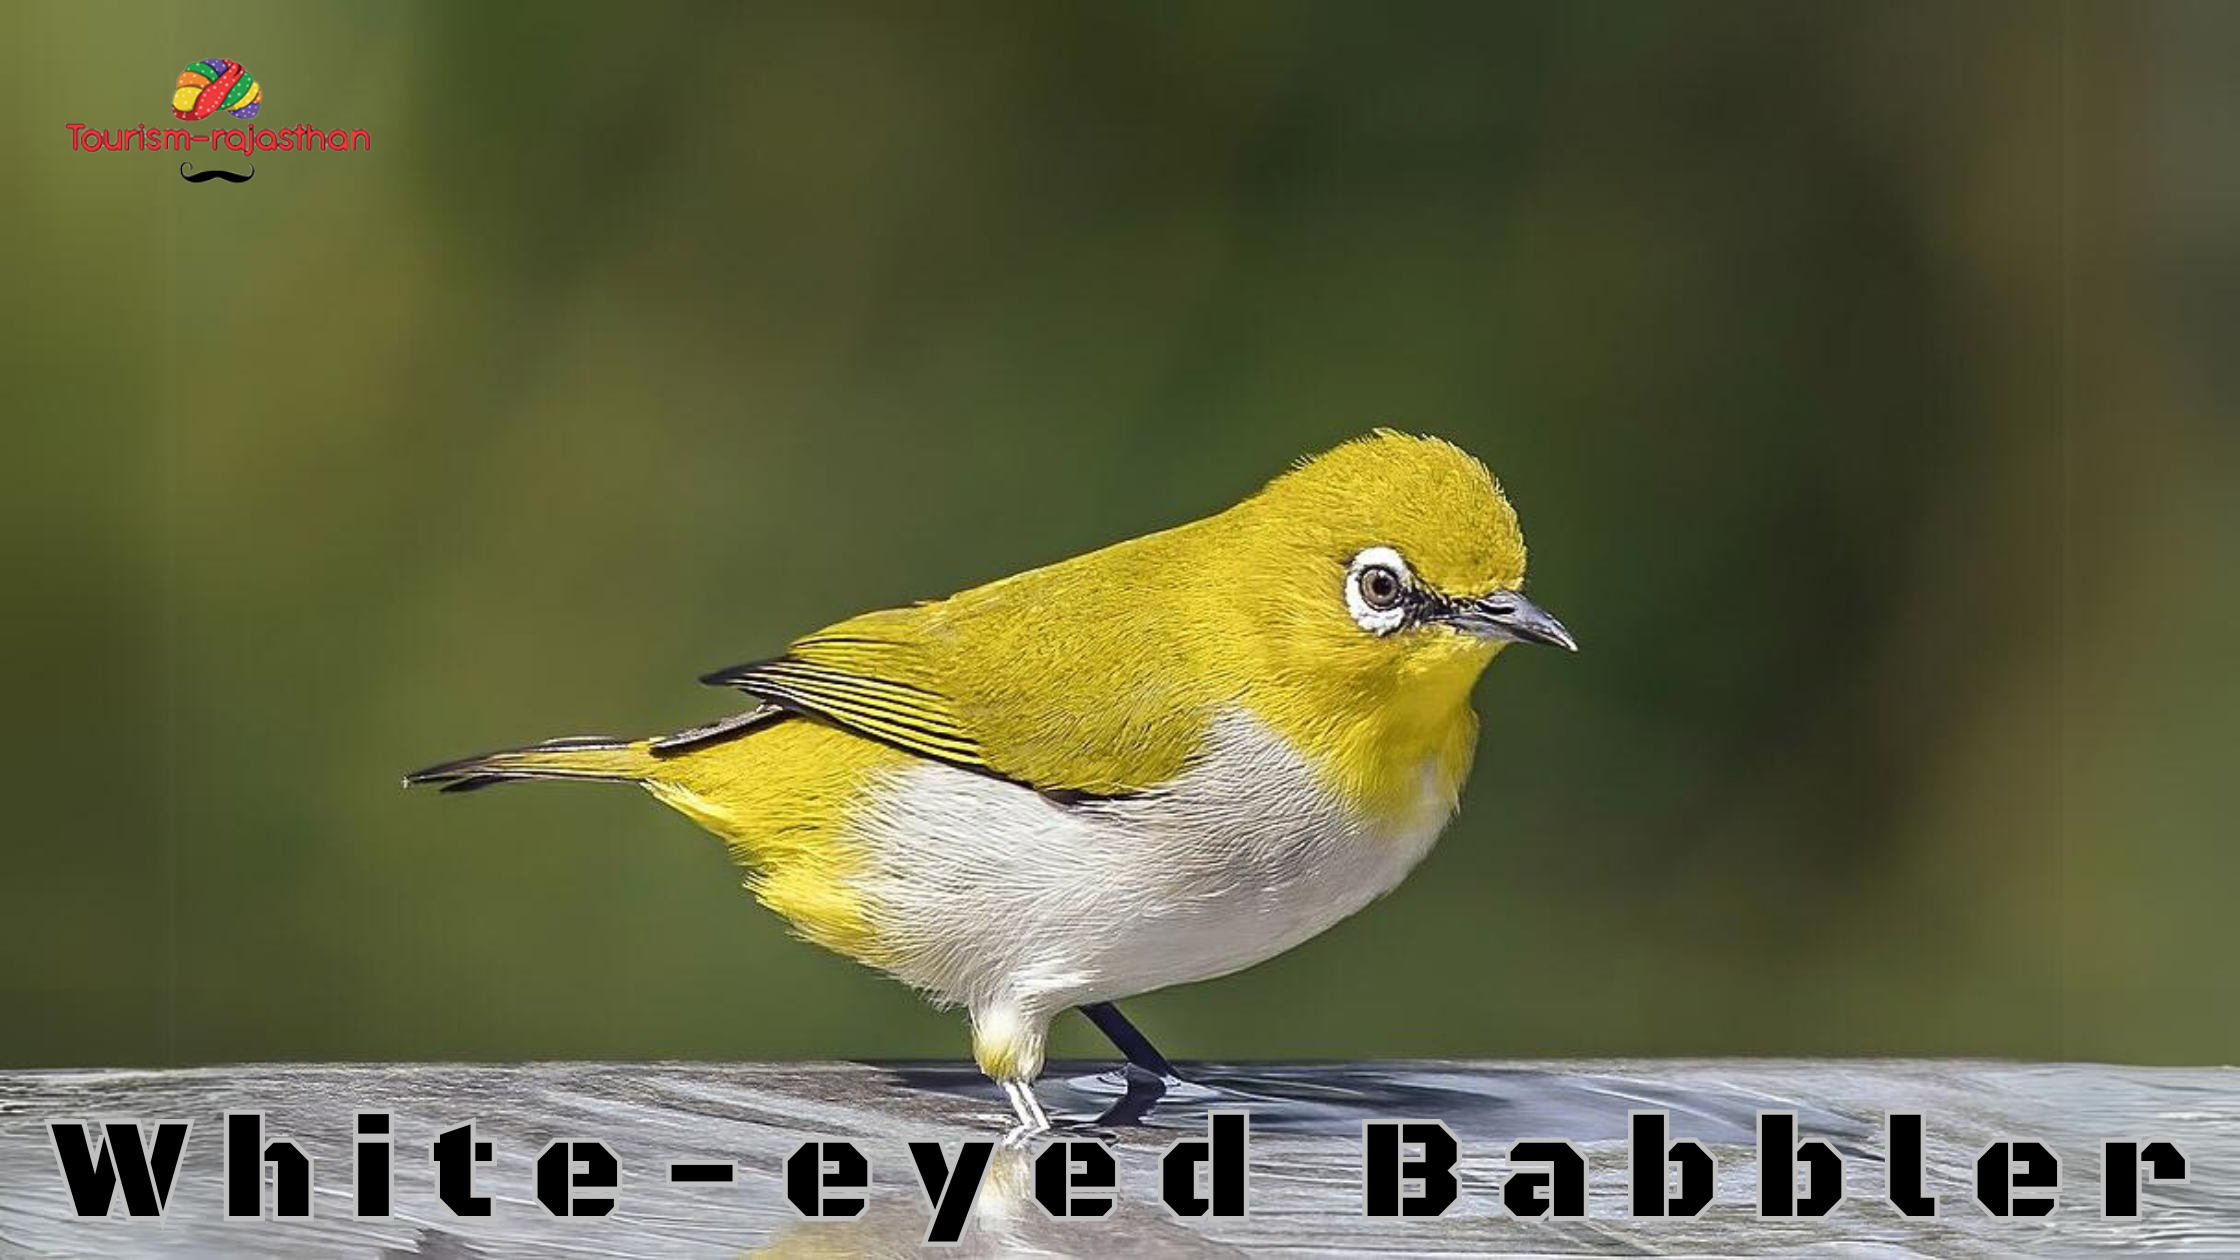 White-eyed Babbler